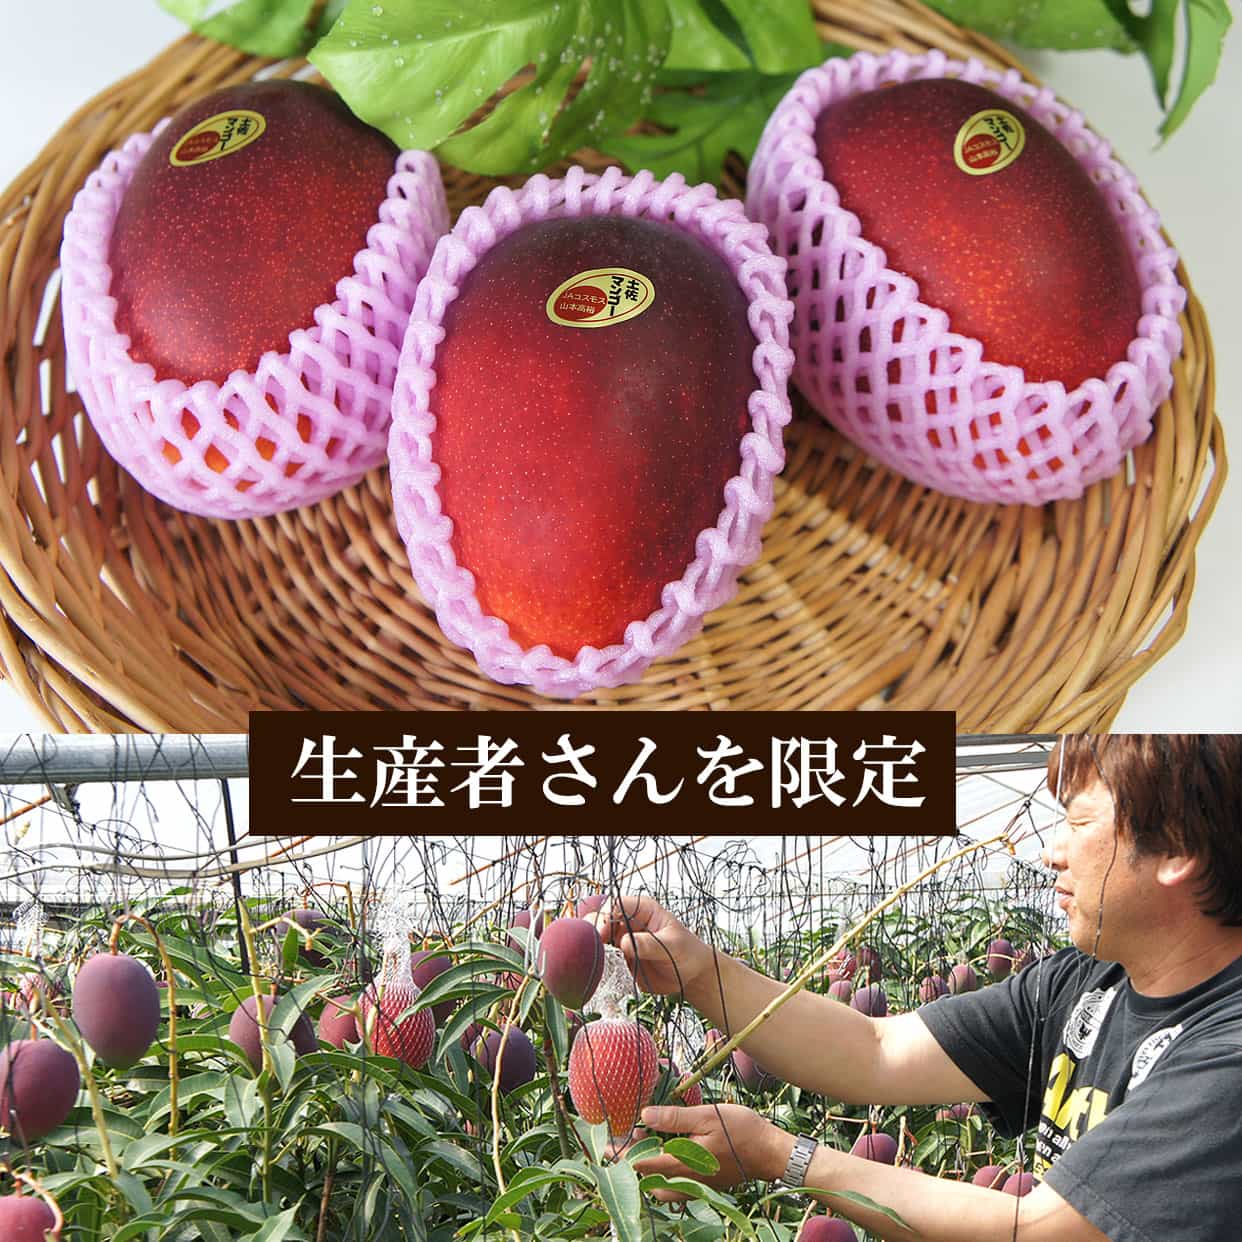 20年以上マンゴーを栽培している生産者・山本高裕さん限定で、確かな美味しさのマンゴーをご用意します